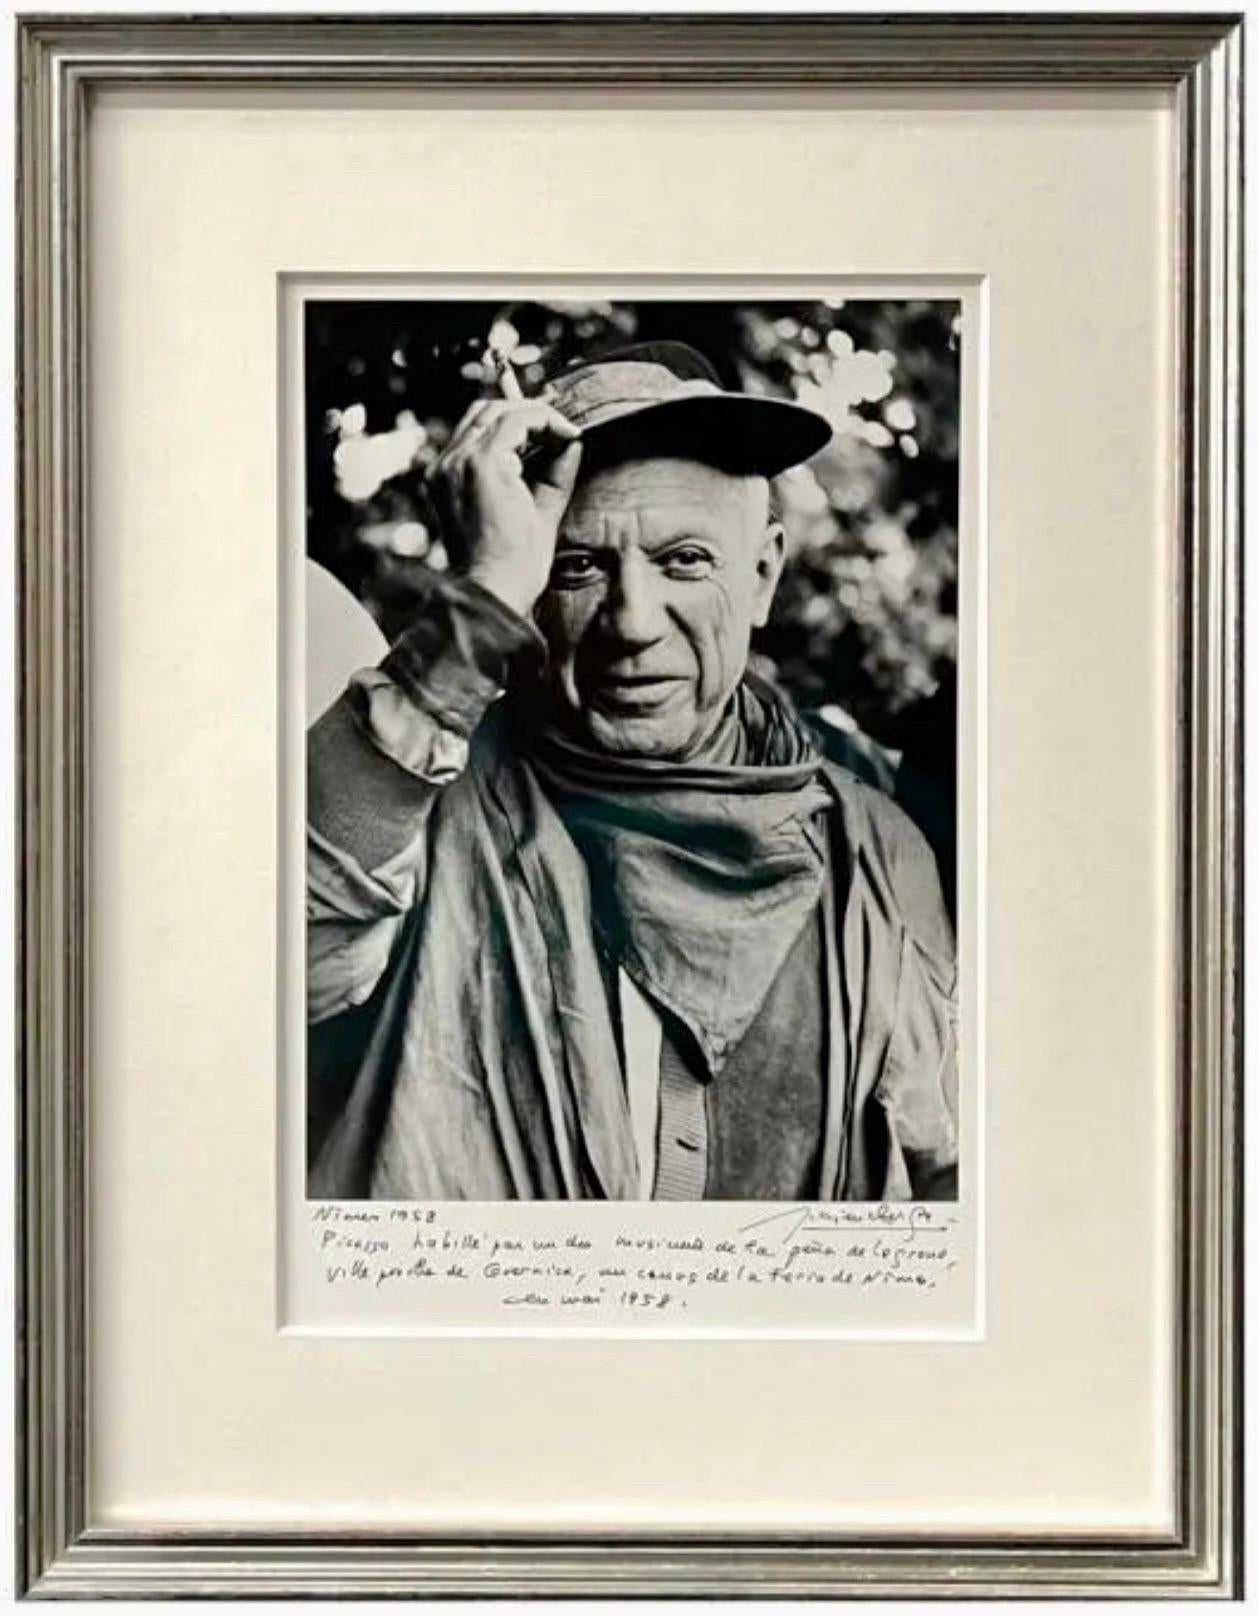 Lucien Clergue (FRANÇAIS, 1934 - 2014) 
Tirage photographique à la gélatine argentique représentant un portrait de Pablo Picasso en costume.
Lors de la Feria de Nîmes, Picasso s'est déguisé en musicien de la Peña de Logroño, une ville proche de